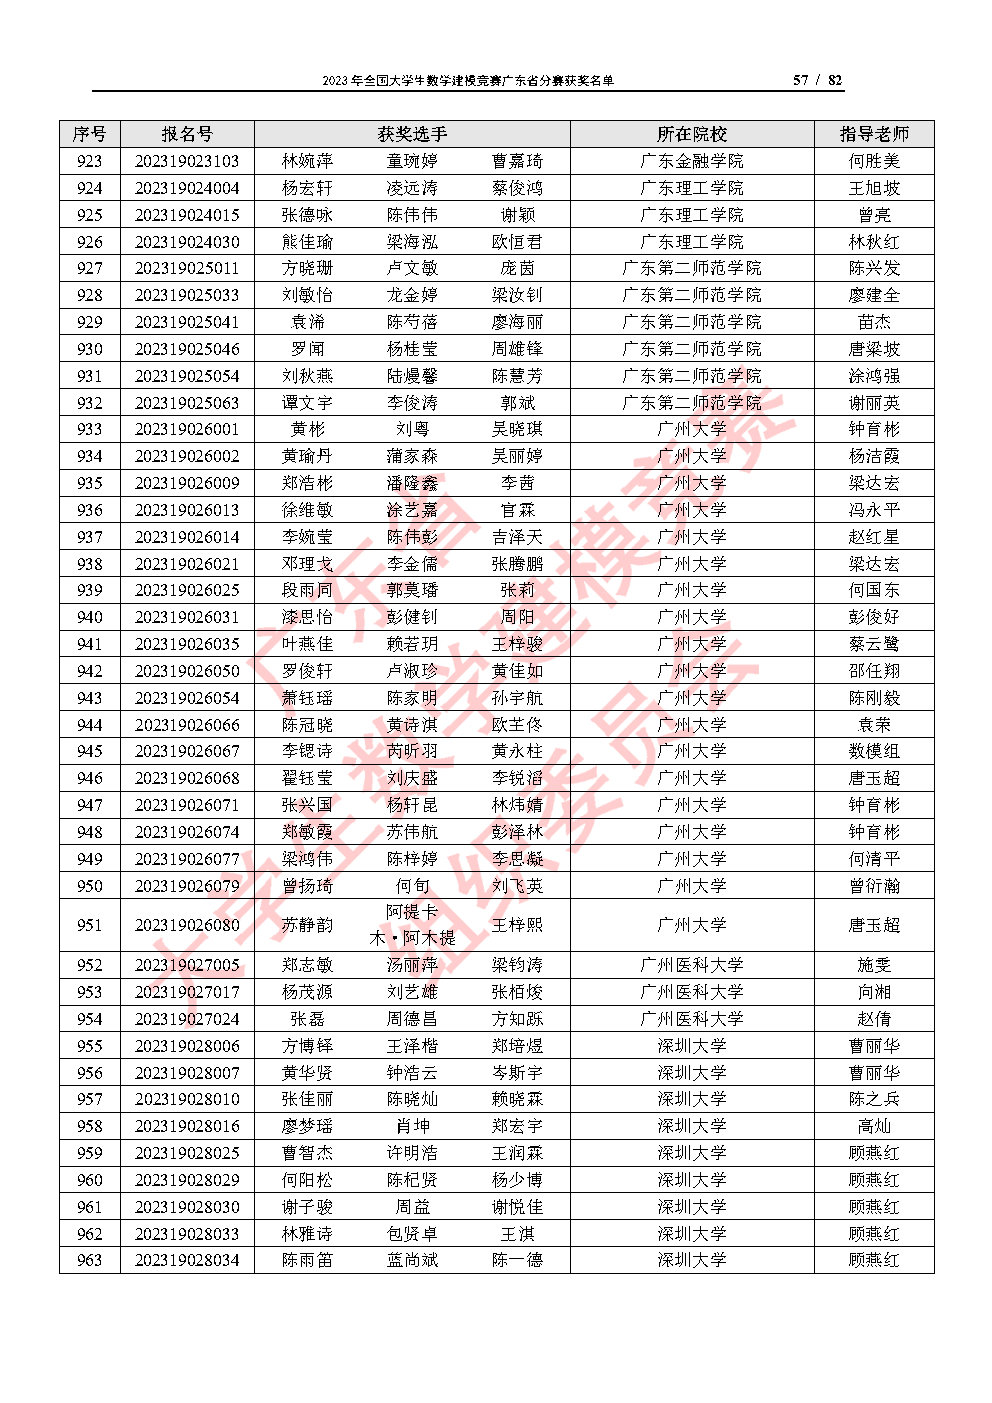 2023年全国大学生数学建模竞赛广东省分赛获奖名单_Page57.jpg